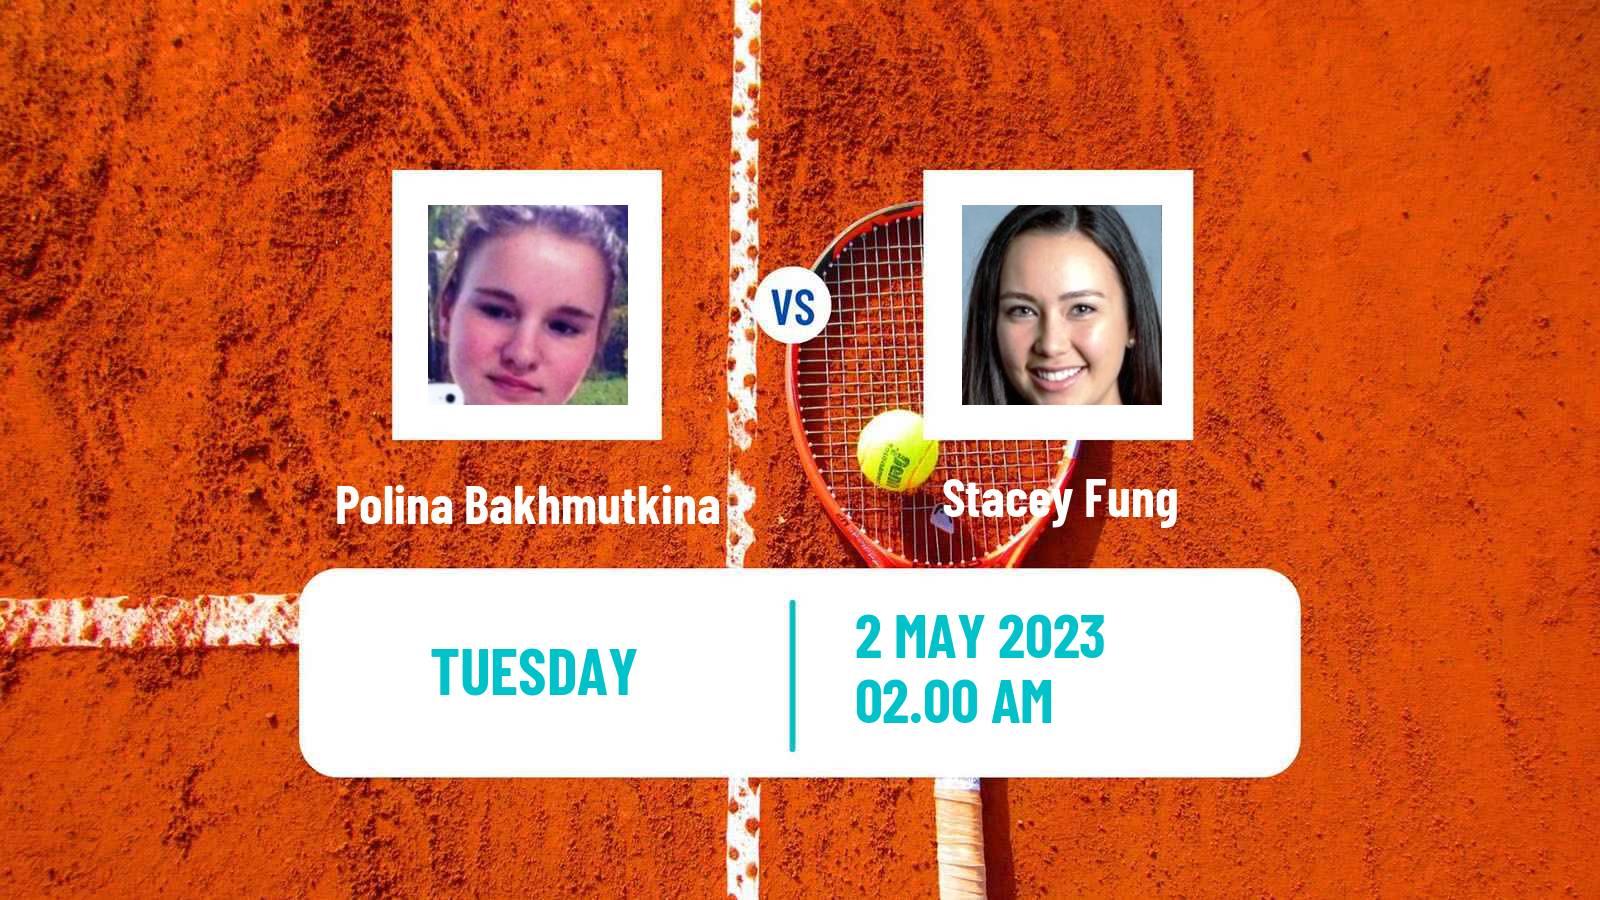 Tennis ITF Tournaments Polina Bakhmutkina - Stacey Fung